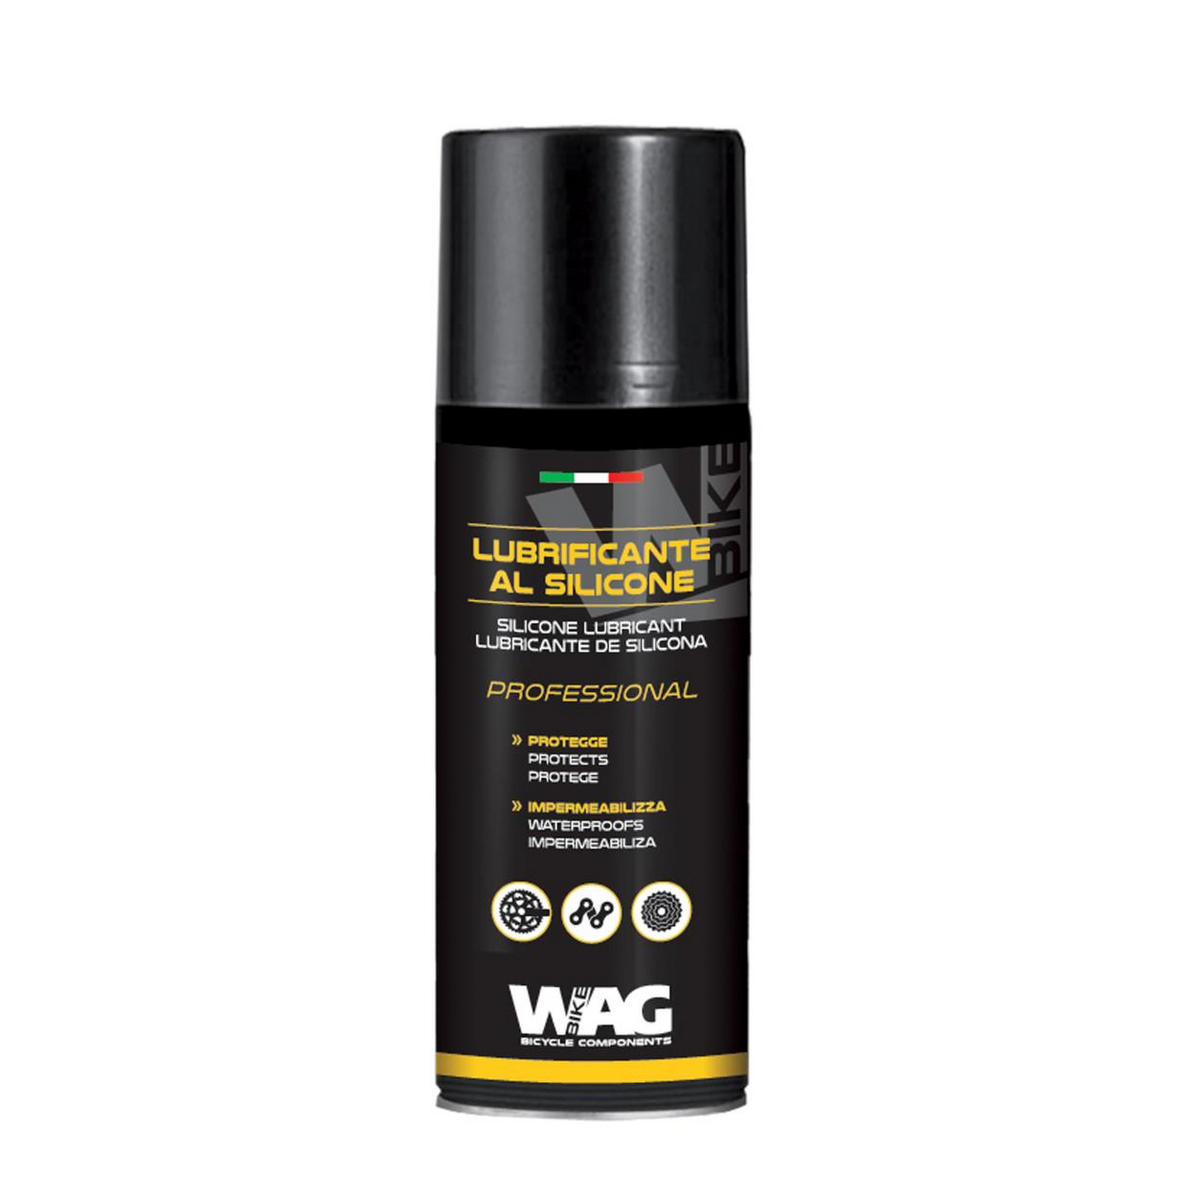 spray lubrificante de silicone profissional 200ml